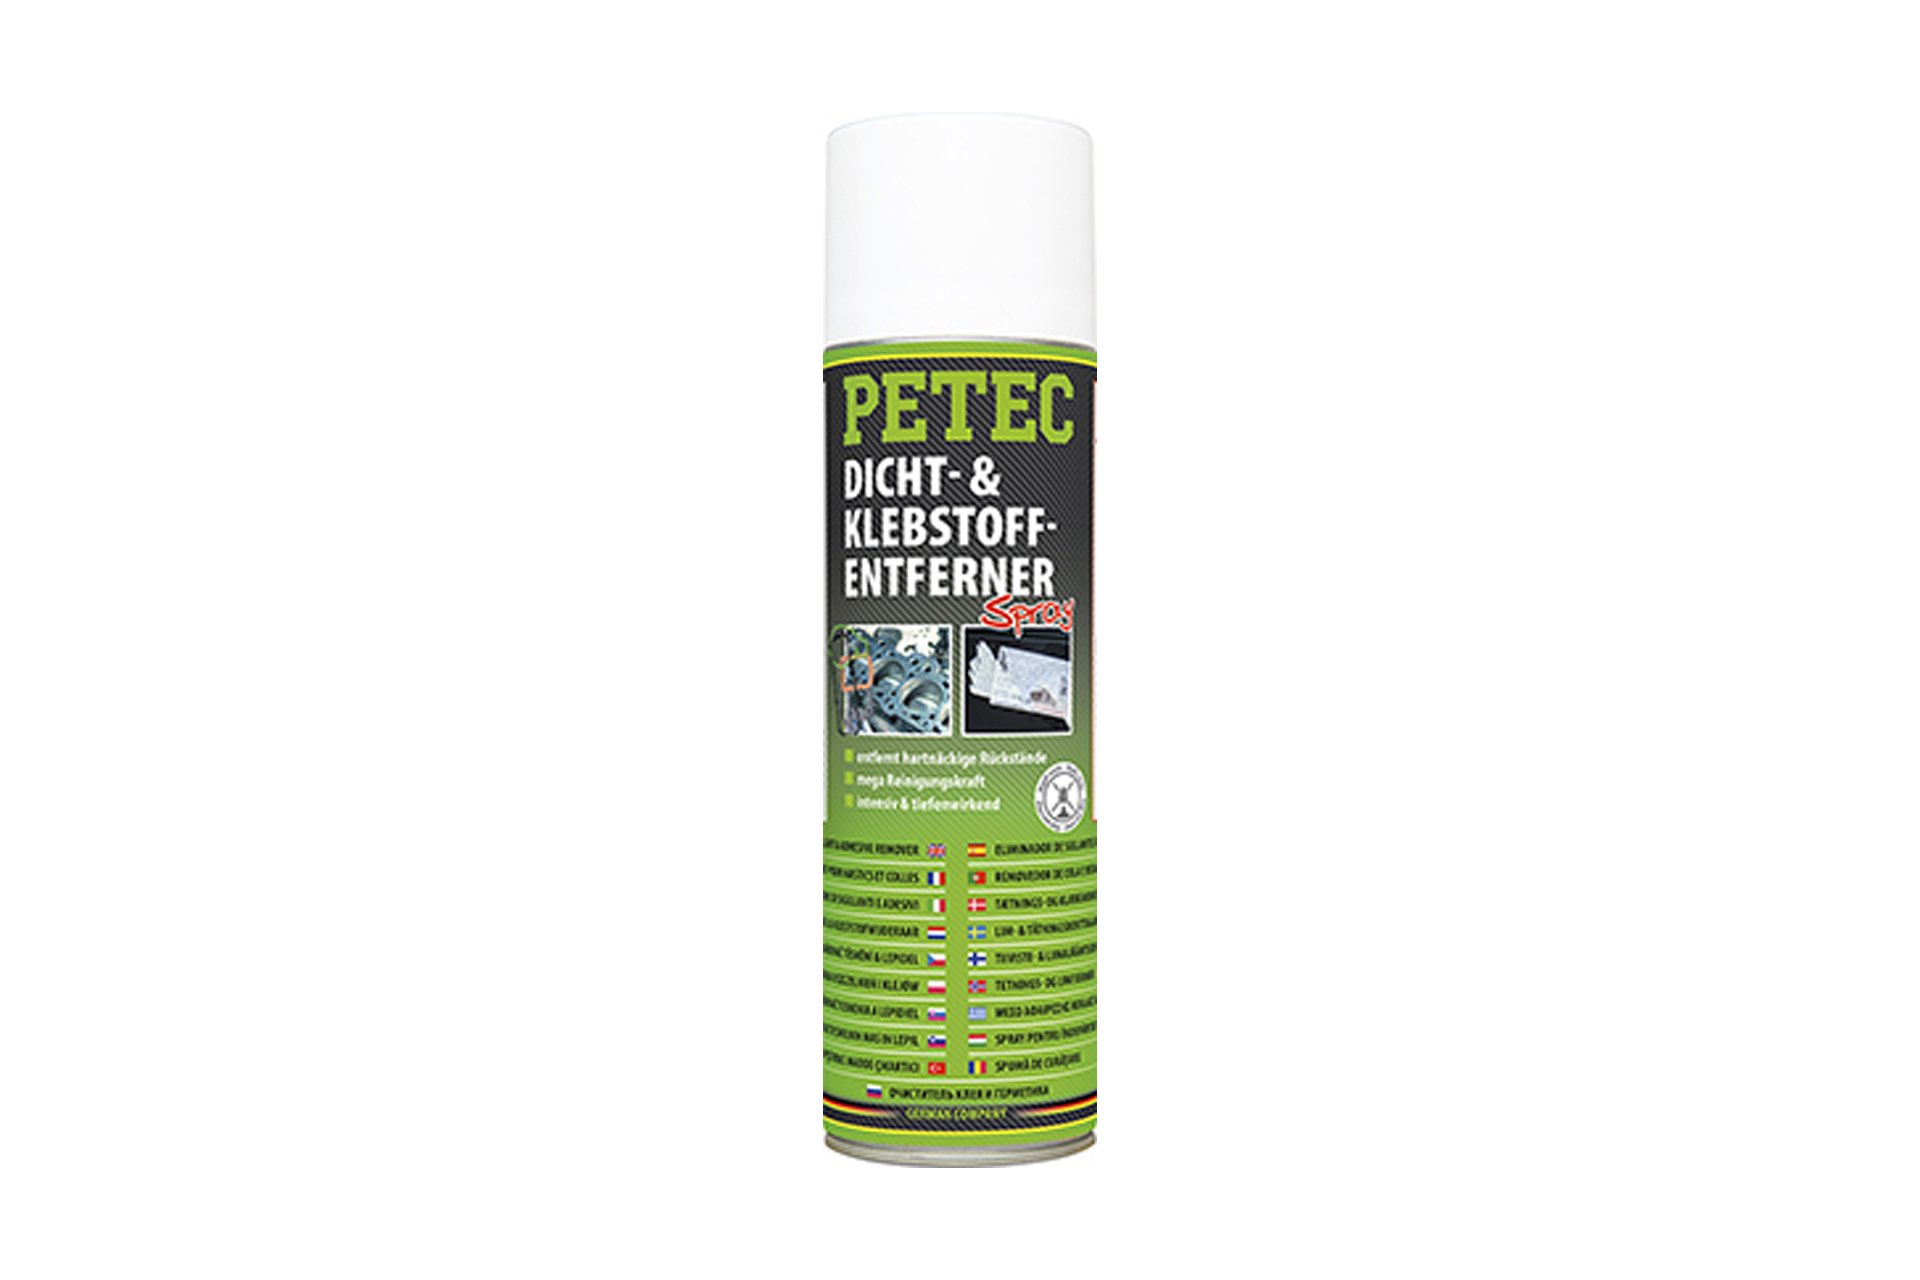 PETEC Dicht- & Klebstoffentferner Spray, 500 ml